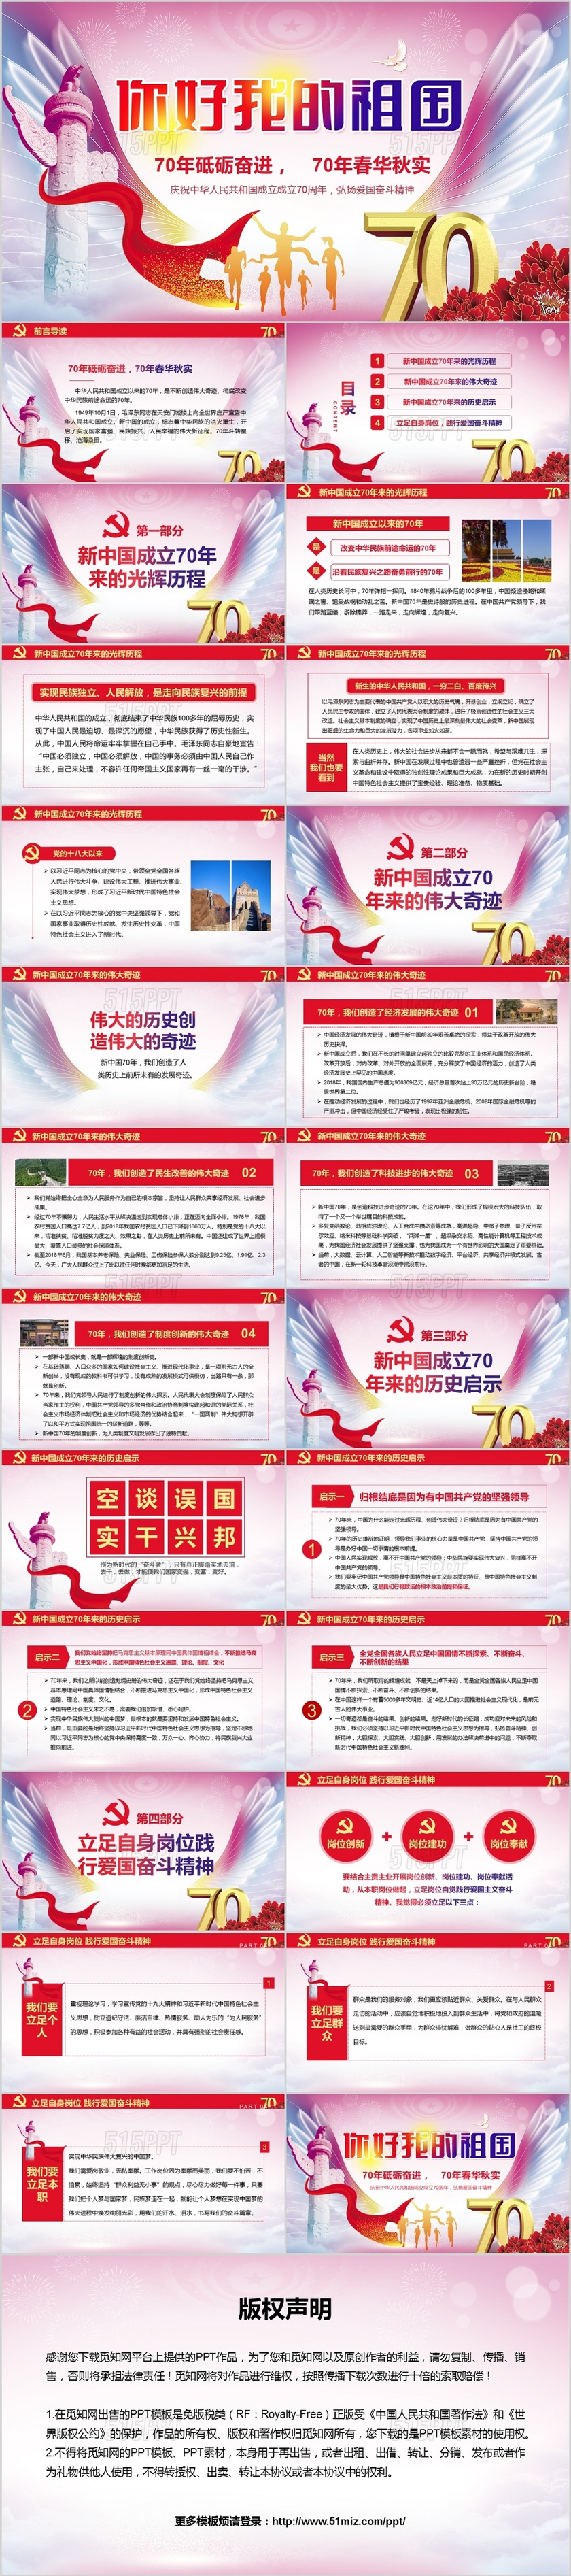 你好我的祖国庆祝中华人民共和国成立成立70周年ppt党政党课